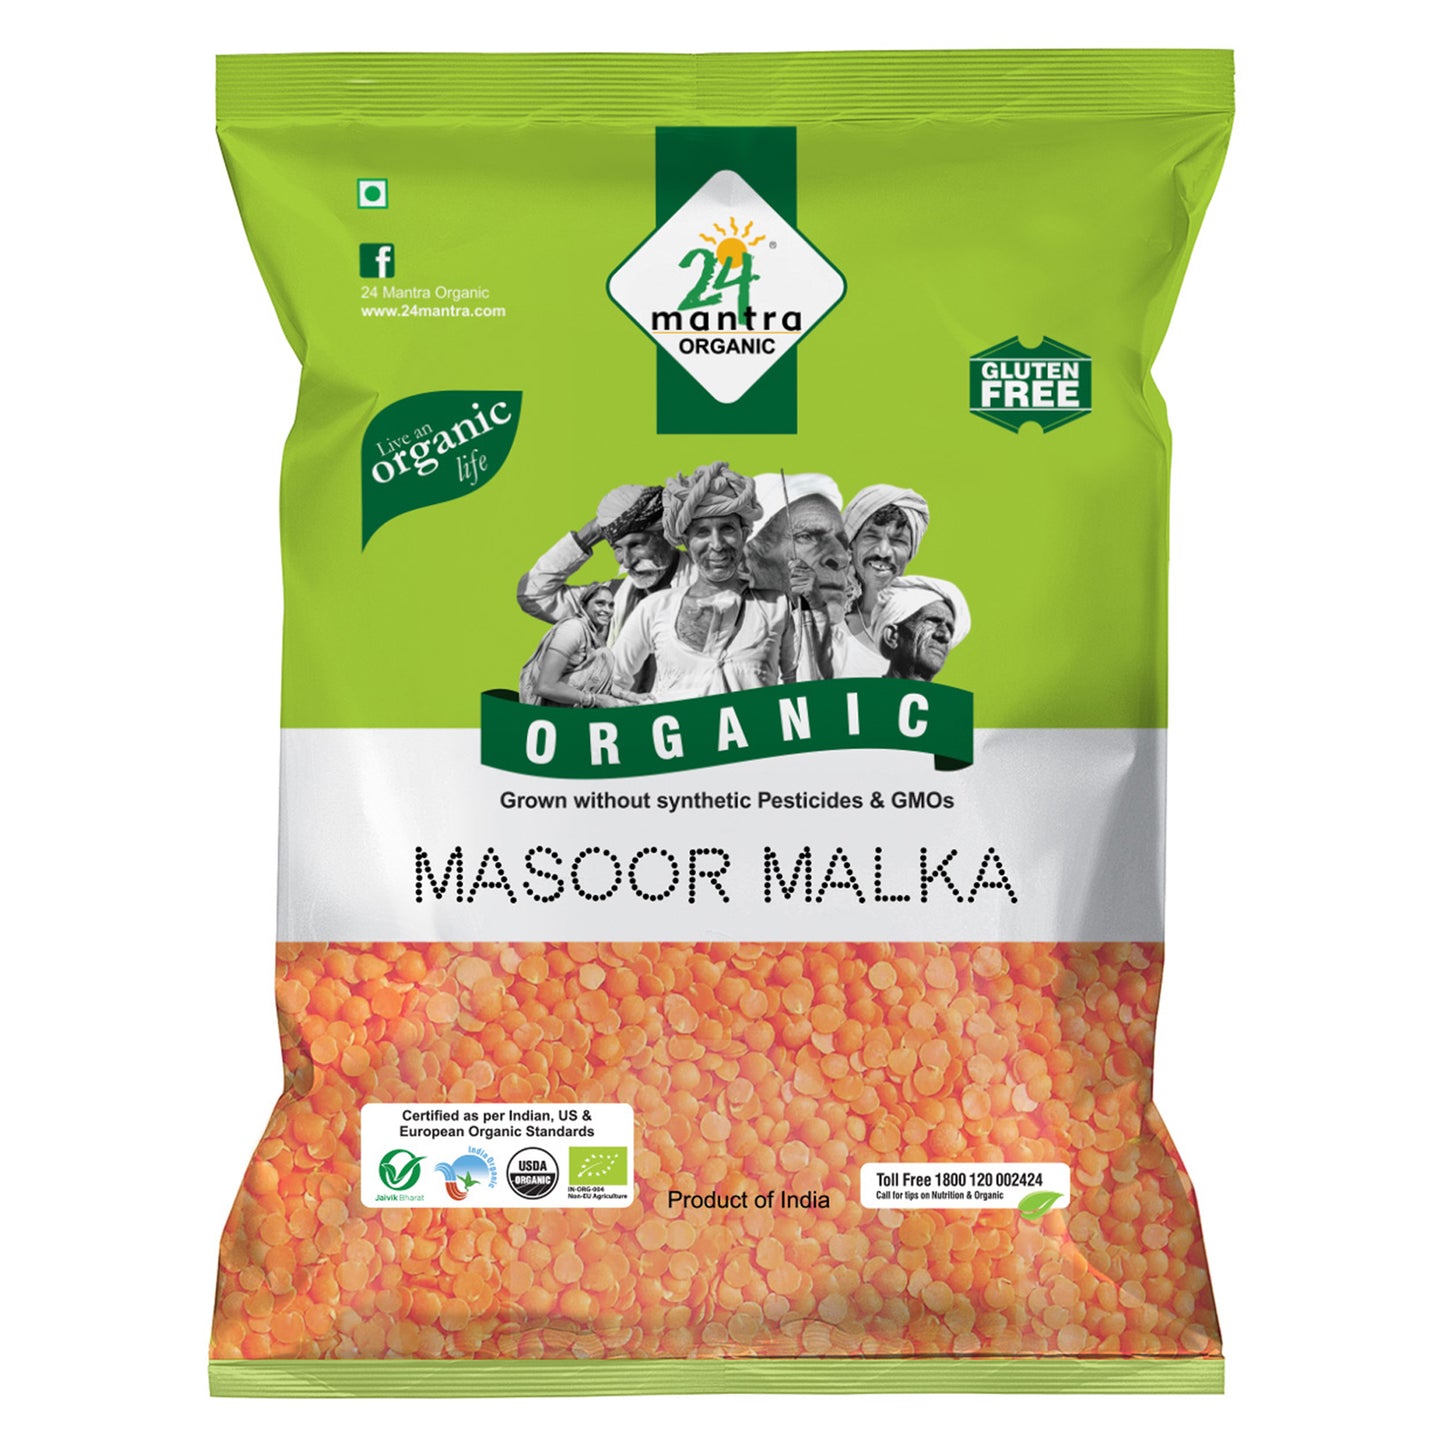 Organic Masoor Malka 500Gm